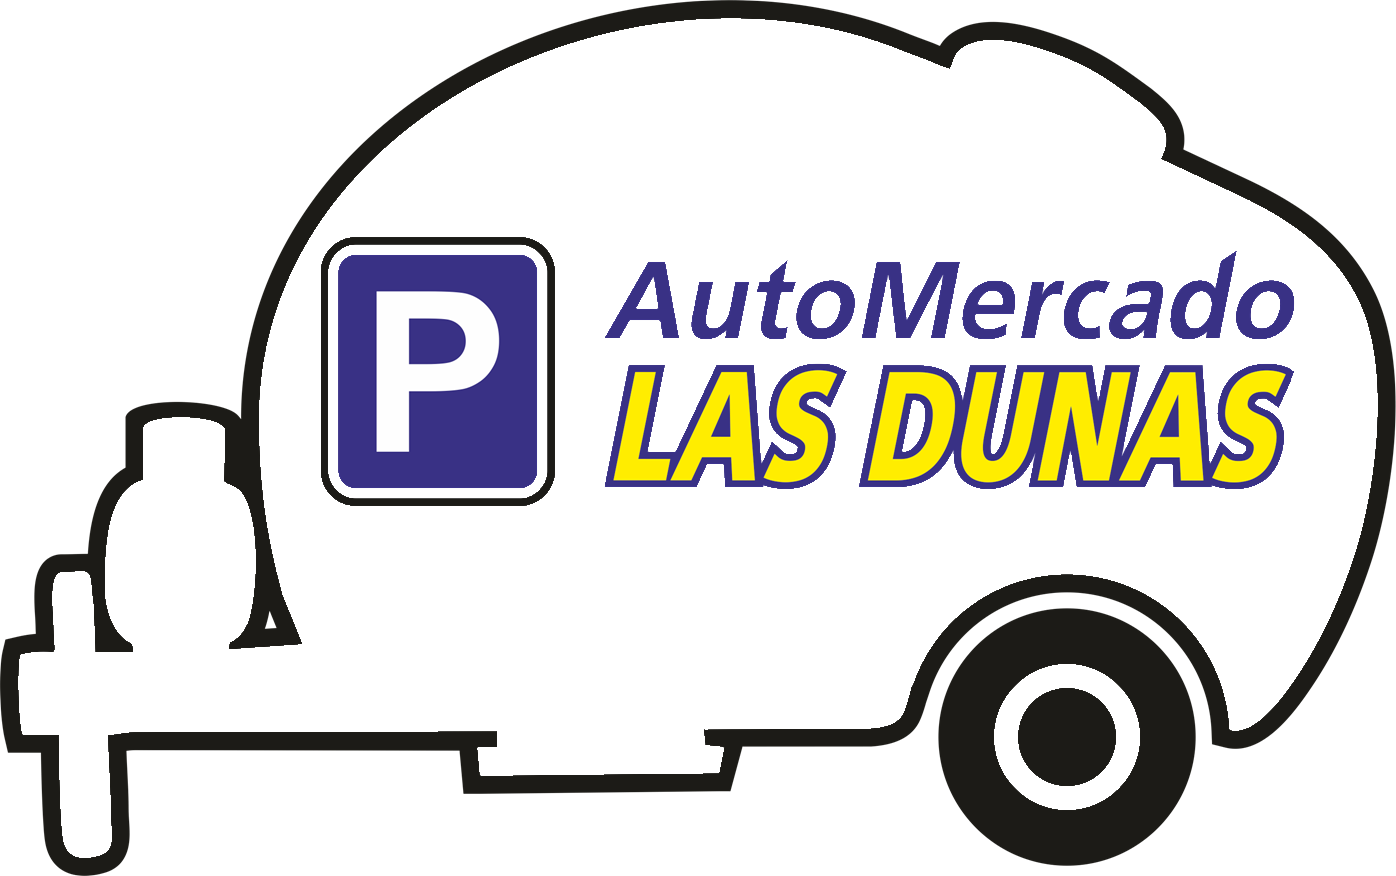 AutoMercado LAS DUNAS - Parking, compra y venta de caravanas